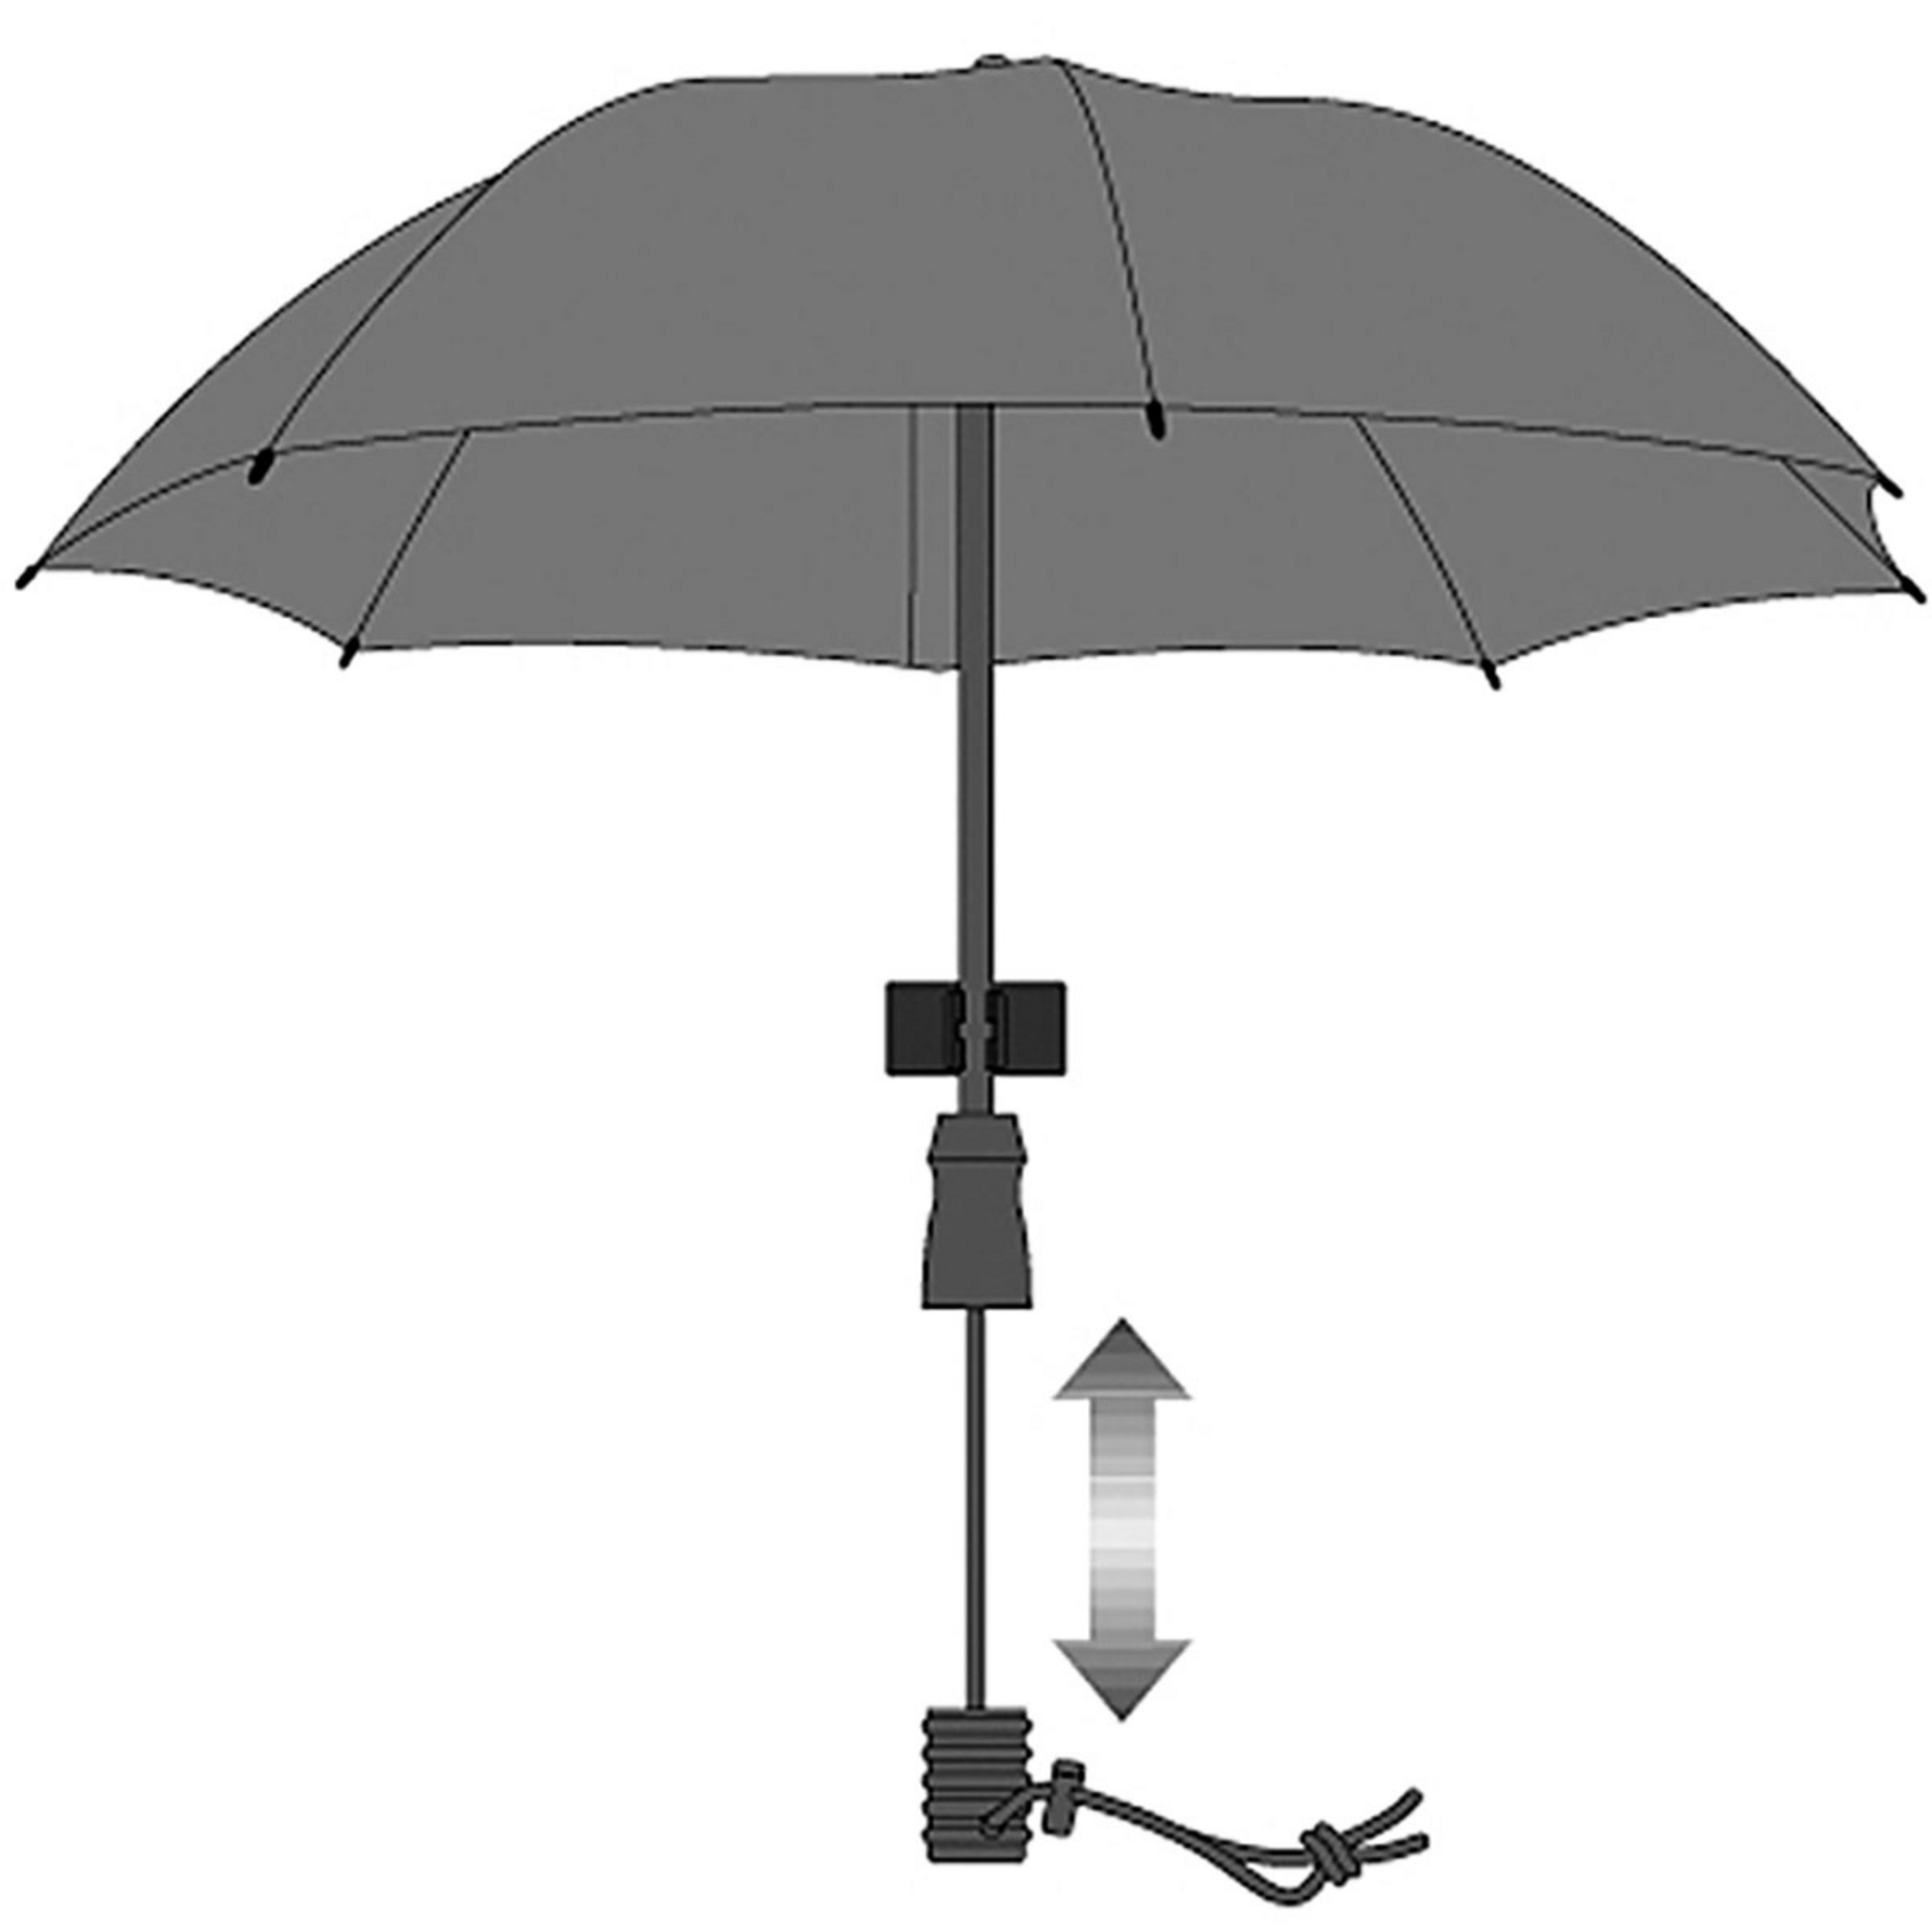 Euroschirm Swing Handsfree Bergzeit Regenschirm kaufen 